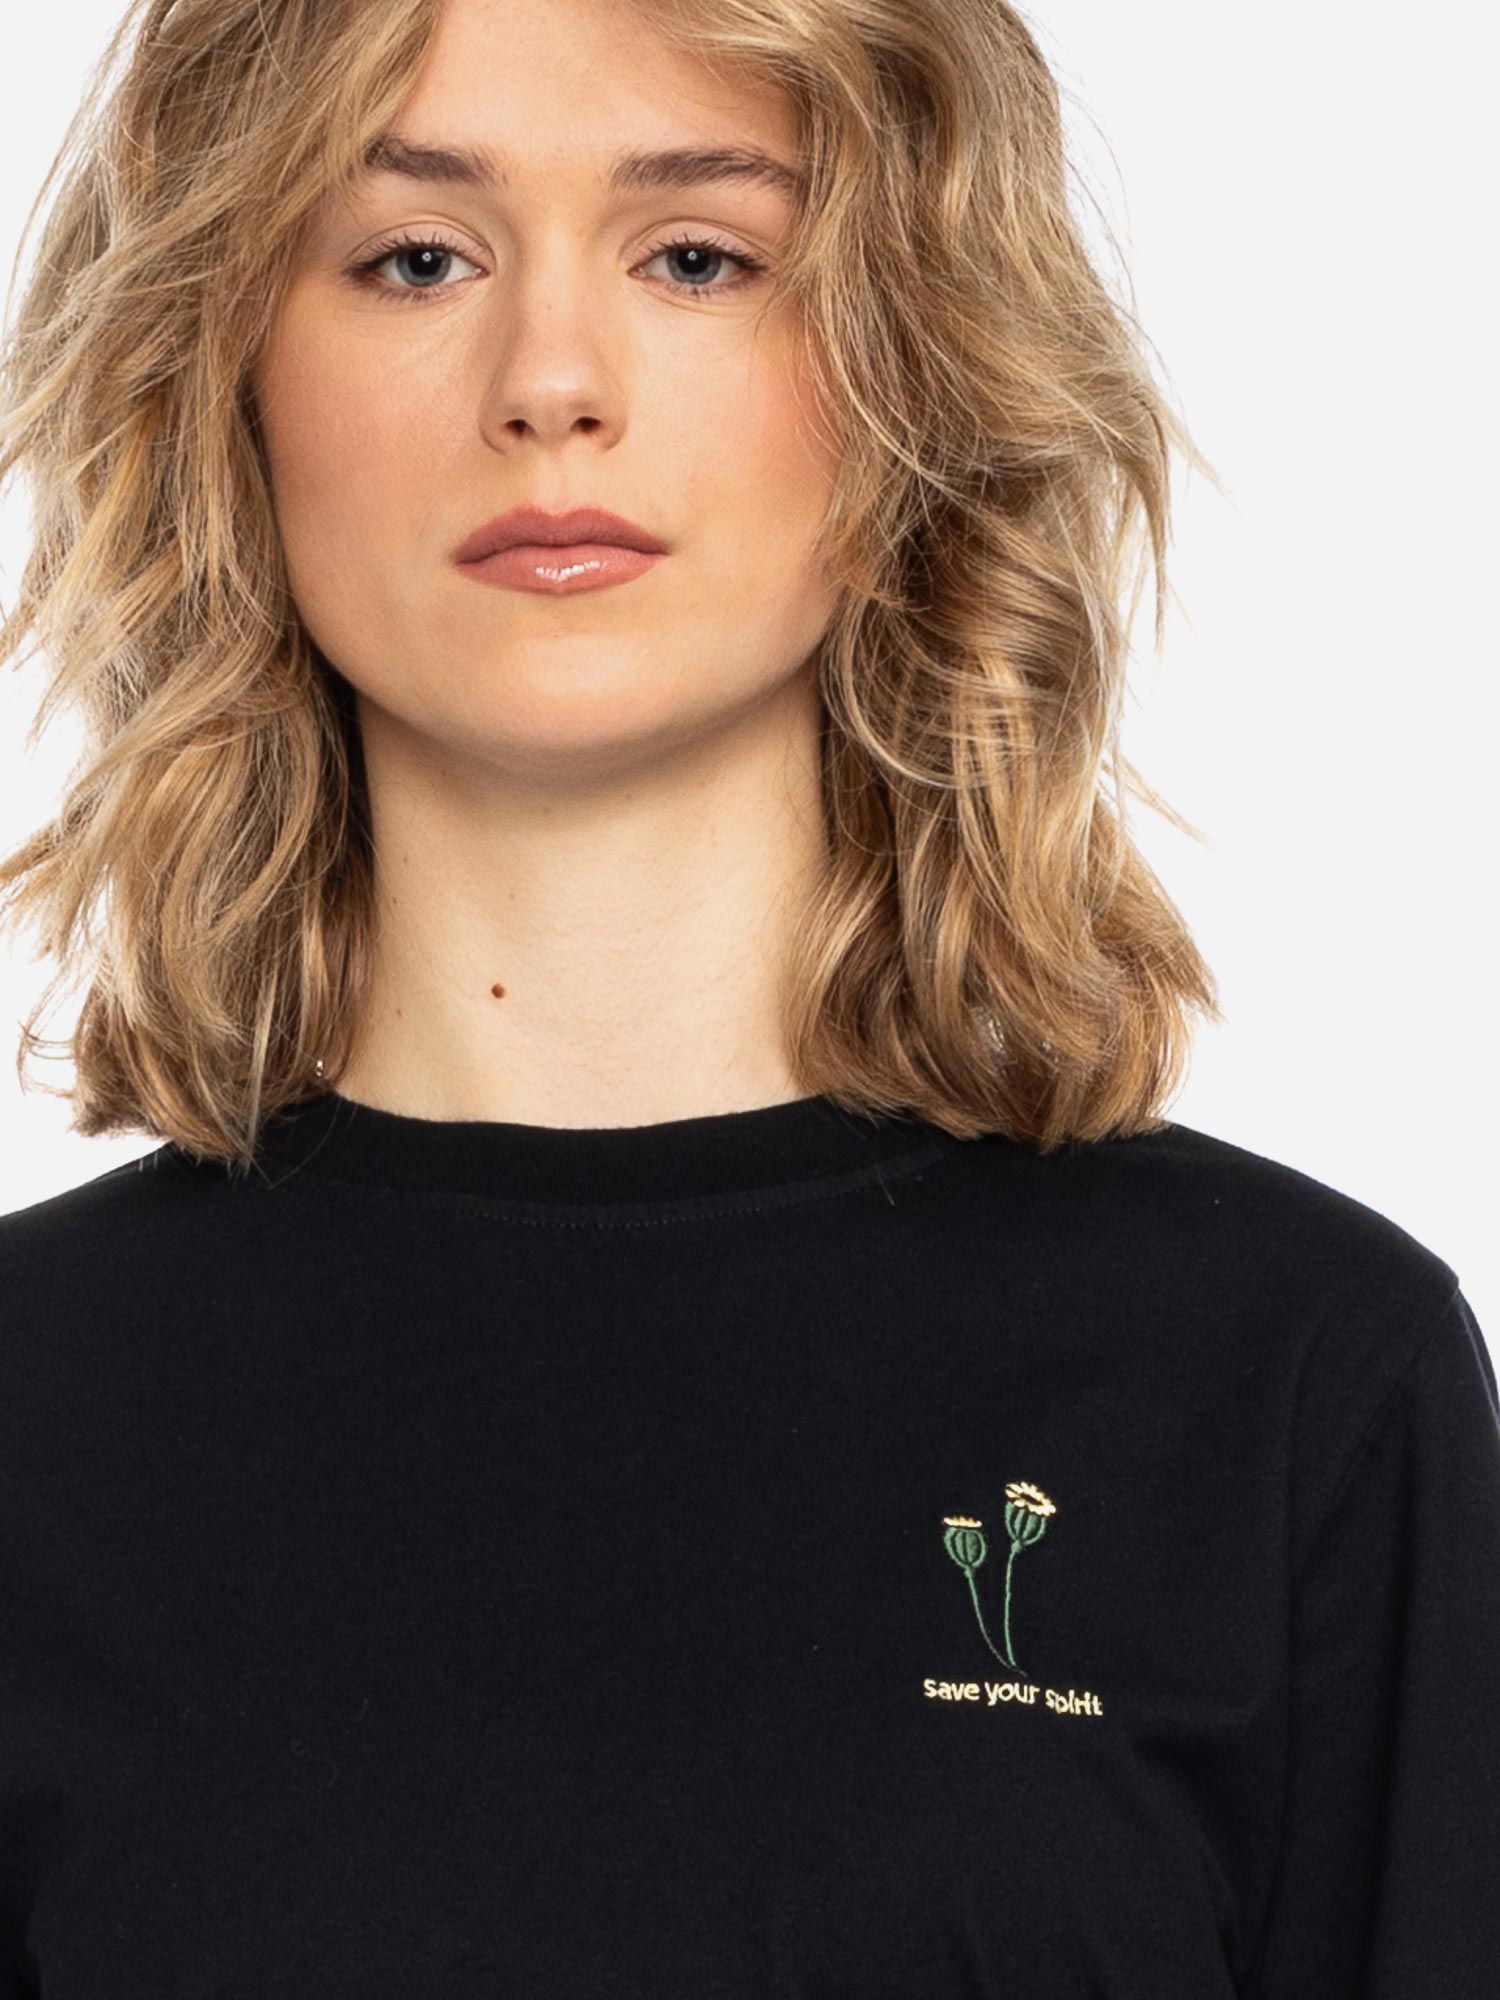 T-Shirt Maja Poppy 2 GOTS OC BLK Größe: XS Farbe: BLK